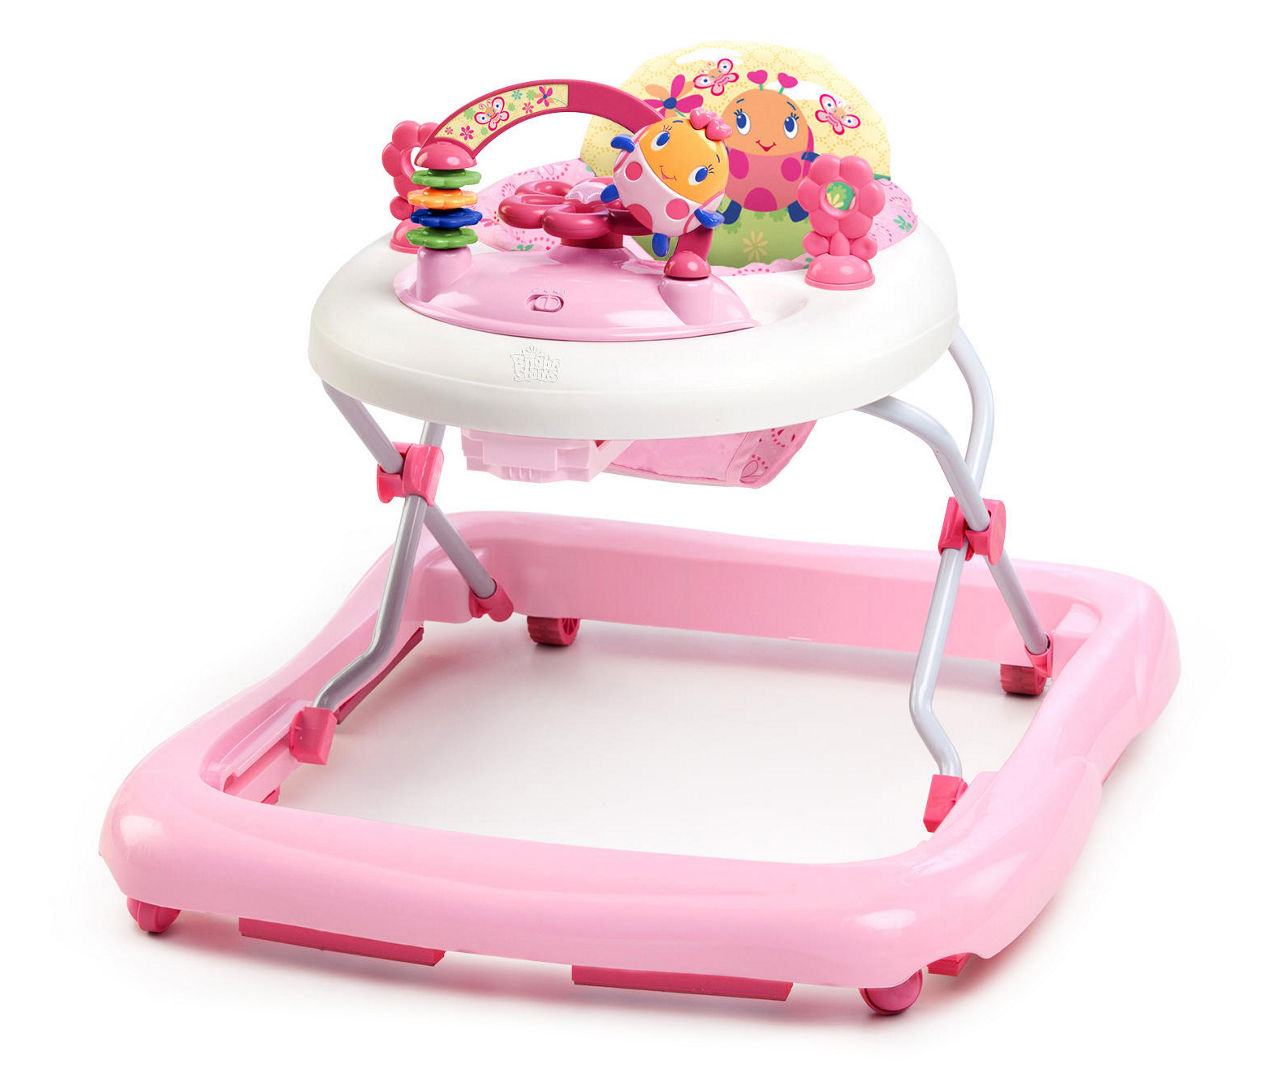 Soplar fusión Adaptabilidad Bright Starts Pretty in Pink JuneBerry Delight Walk-A-Bout Baby Walker |  Big Lots